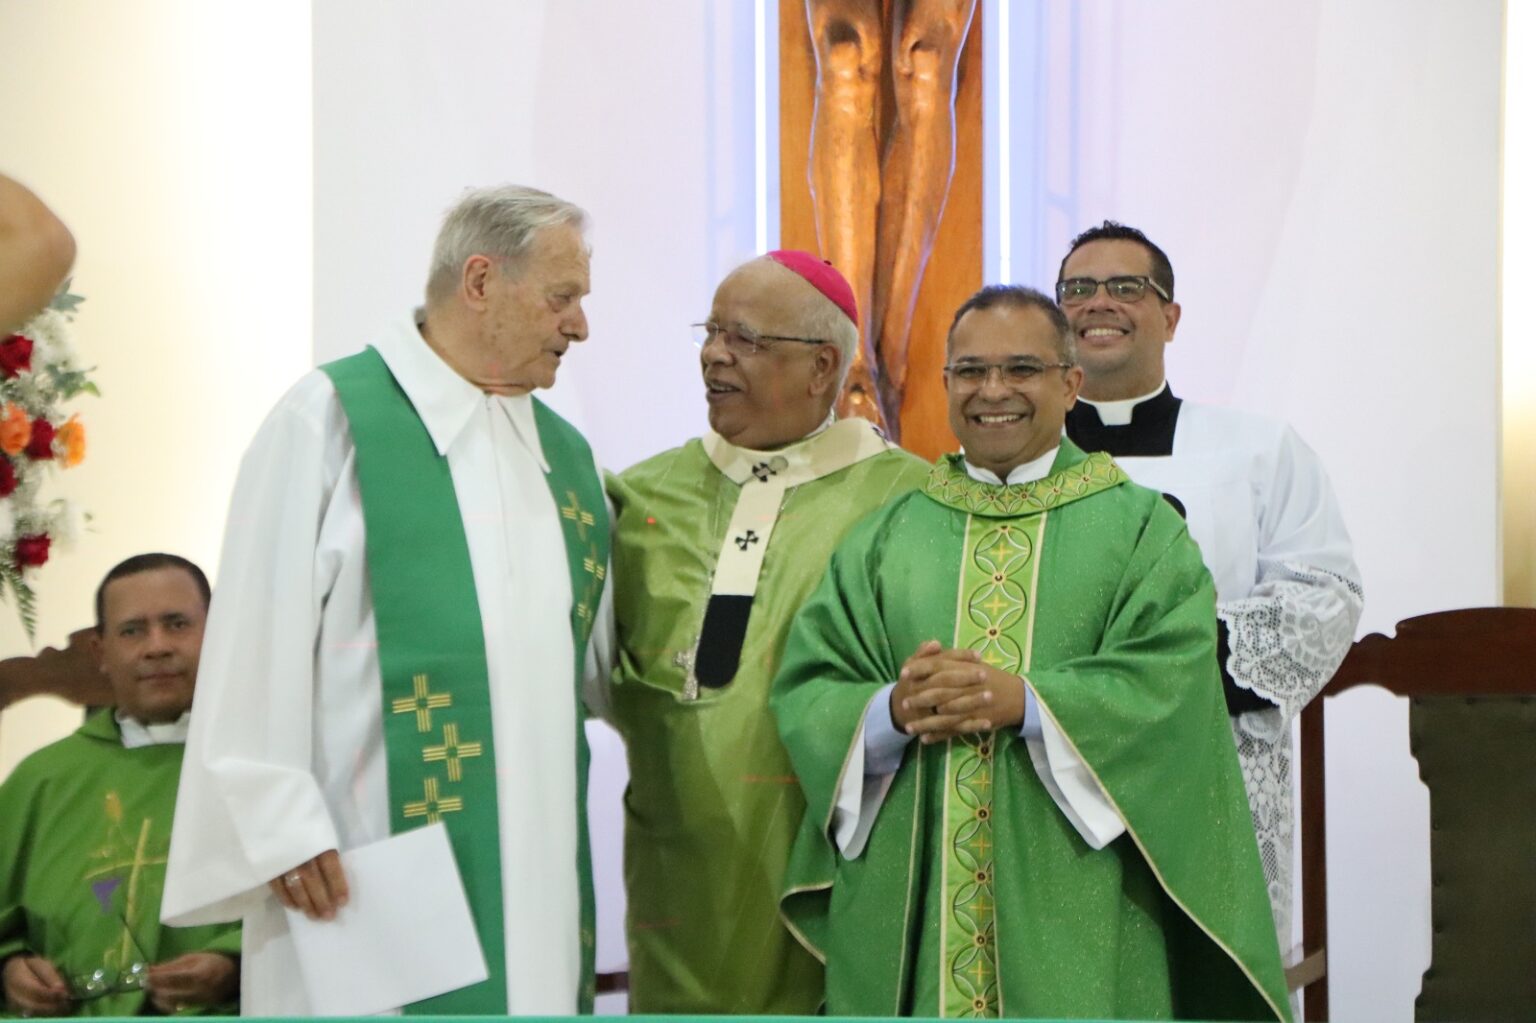 Padre Marcos Recebe a Responsabilidade da Paróquia de Santo Antônio em Vitória